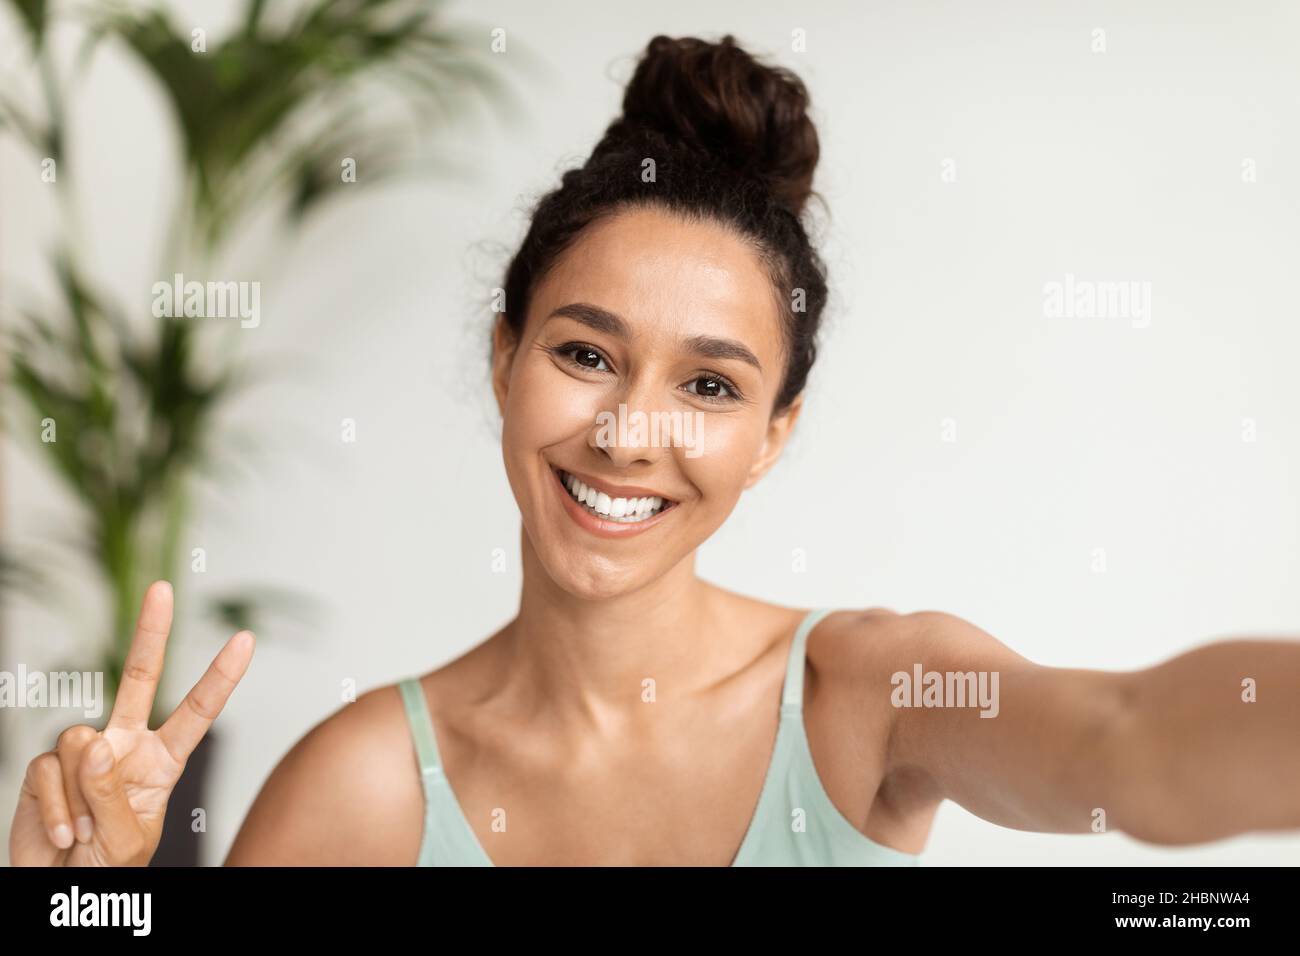 Bonne humeur.Joyeuse jeune belle femme prenant Selfie et montrant le geste de paix Banque D'Images